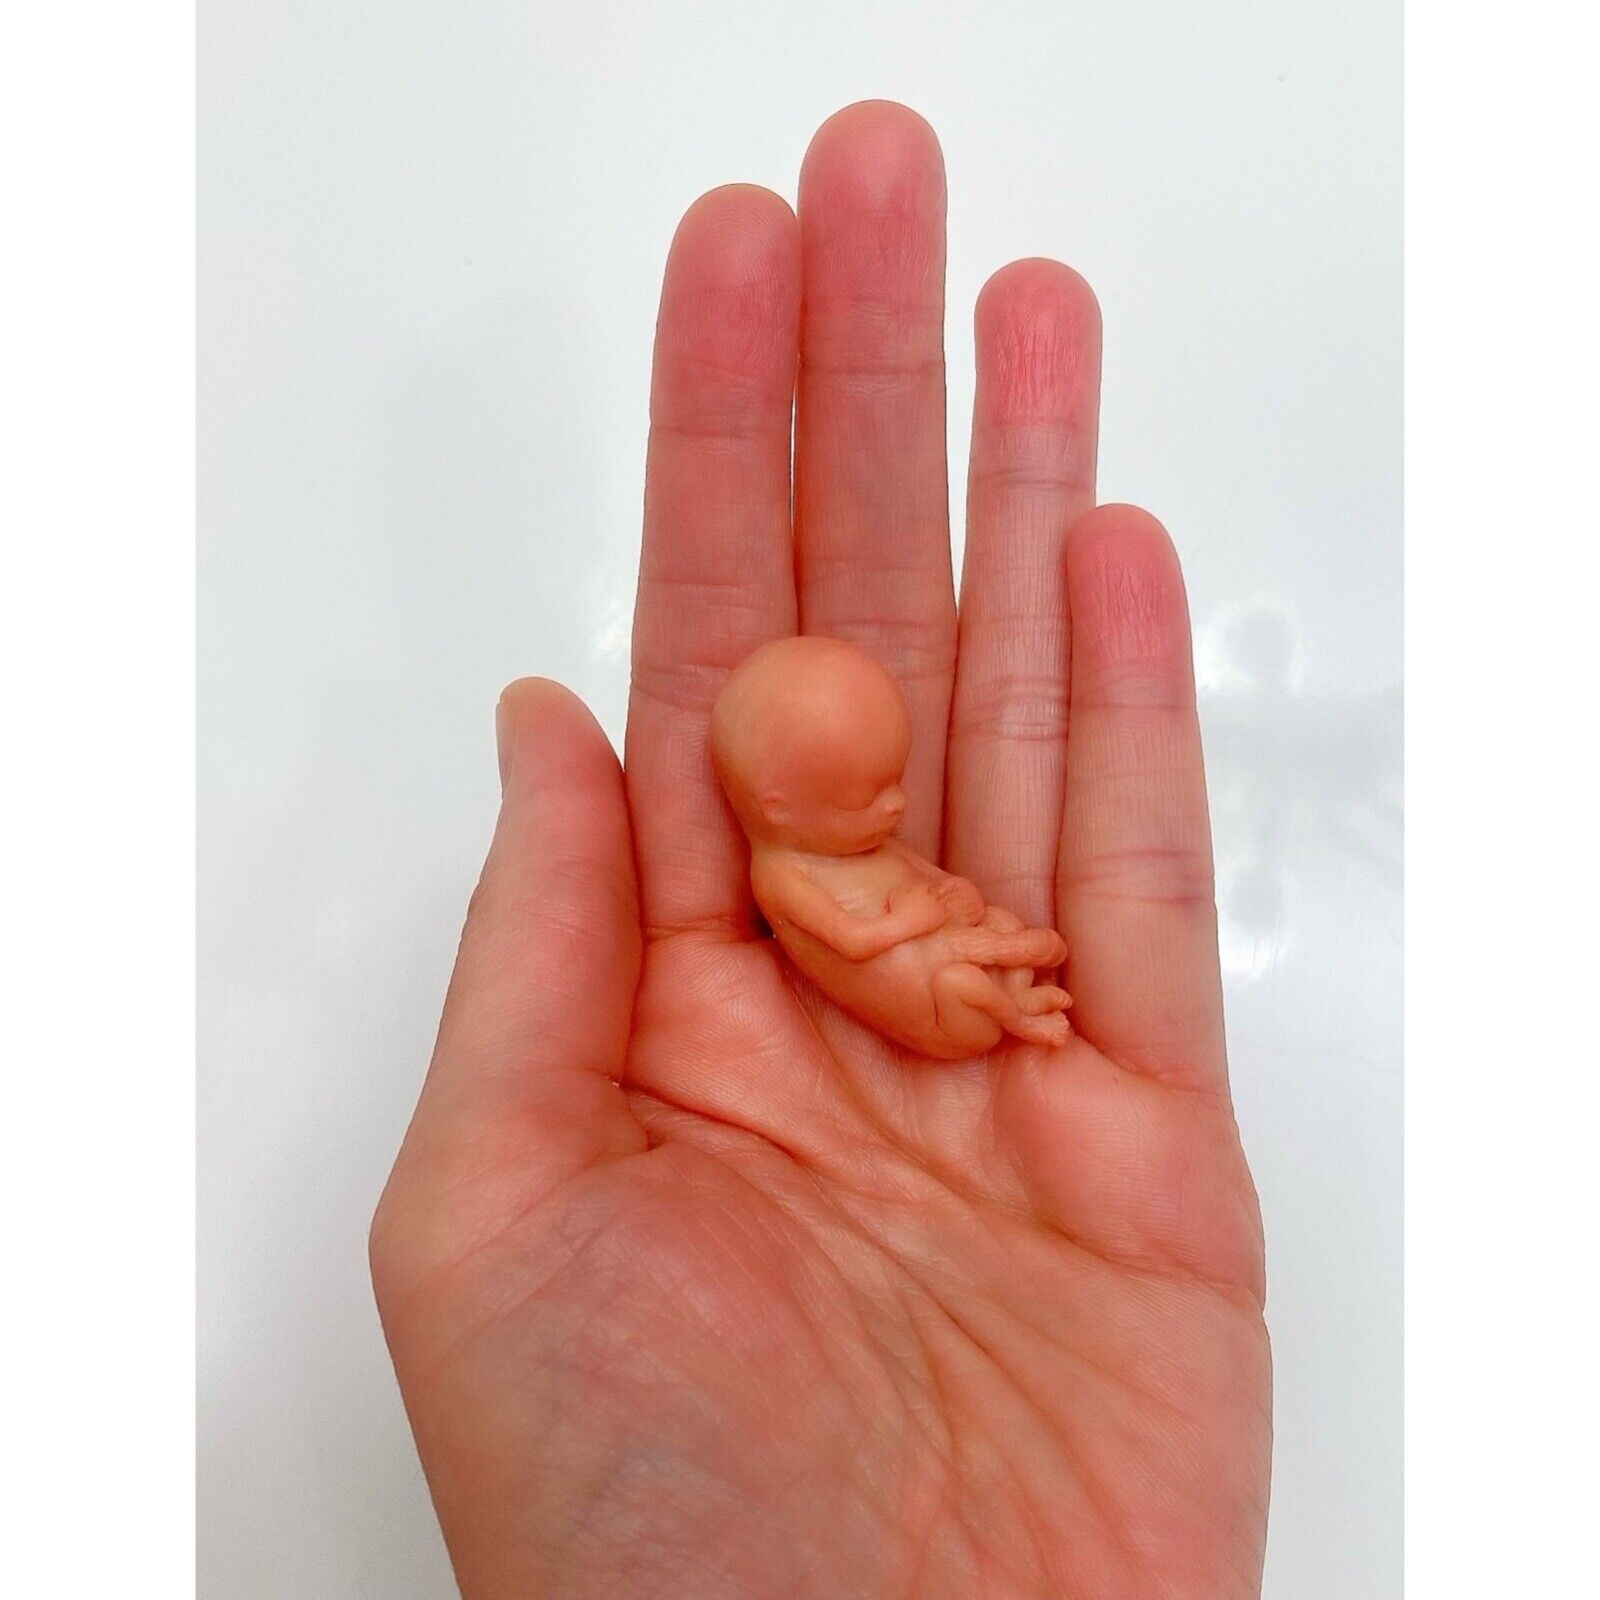 11 Weeks Baby Fetus, Stage of Fetal Development (Memorial/Miscarriage/Keepsake)